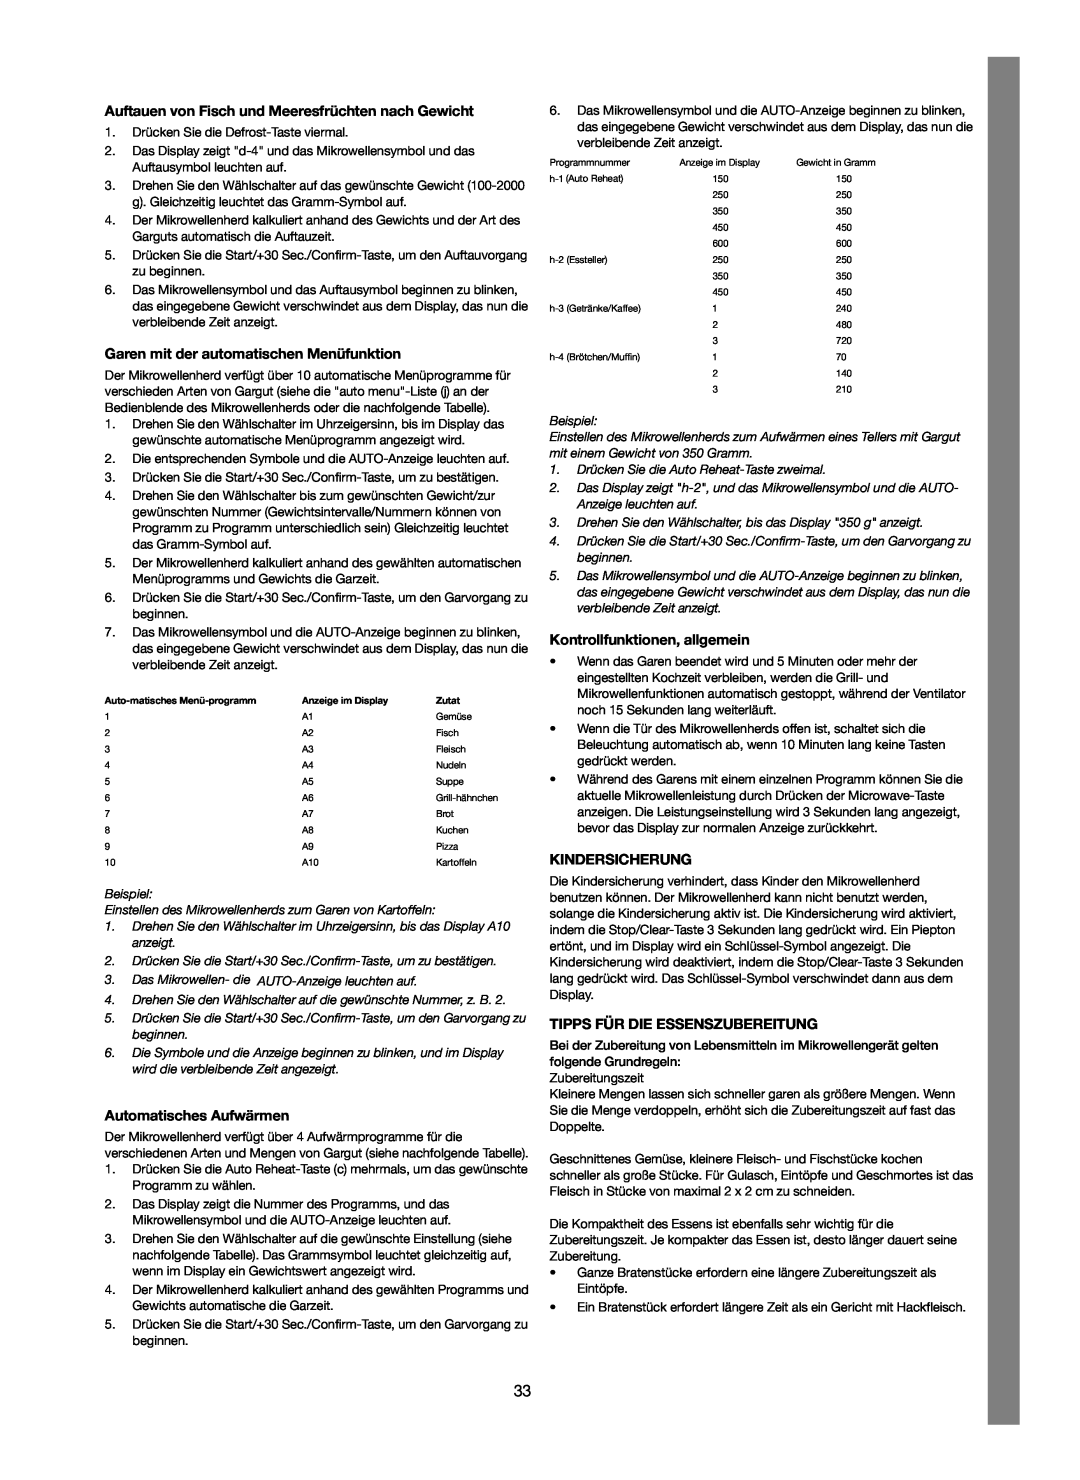 Melissa 753-123 manual Garen mit der automatischen Menüfunktion, Automatisches Aufwärmen, Kontrollfunktionen, allgemein 